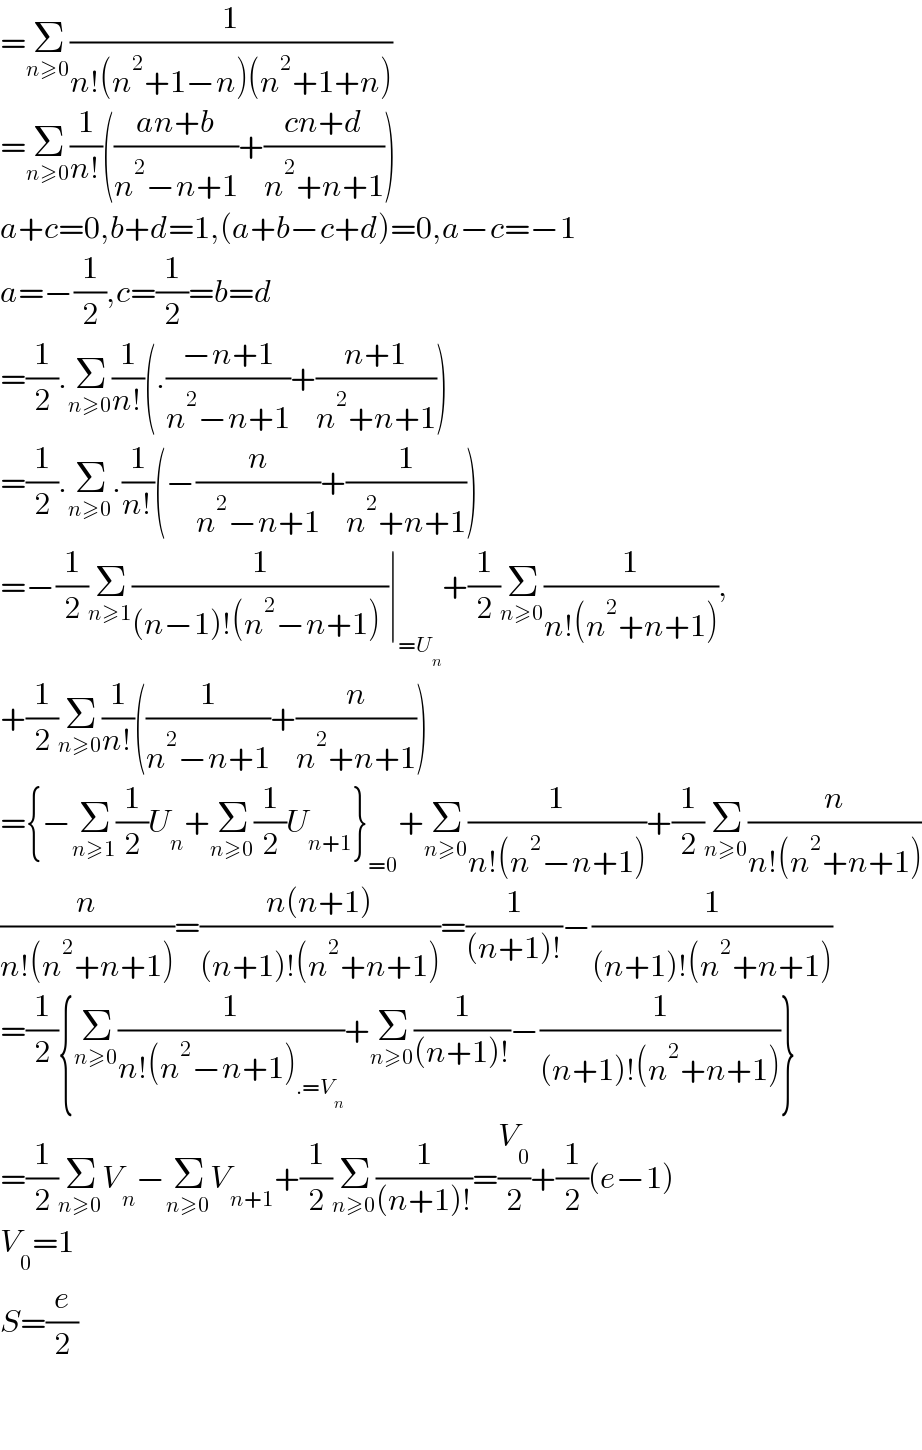 =Σ_(n≥0) (1/(n!(n^2 +1−n)(n^2 +1+n)))  =Σ_(n≥0) (1/(n!))(((an+b)/(n^2 −n+1))+((cn+d)/(n^2 +n+1)))  a+c=0,b+d=1,(a+b−c+d)=0,a−c=−1  a=−(1/2),c=(1/2)=b=d  =(1/2).Σ_(n≥0) (1/(n!))(.((−n+1)/(n^2 −n+1))+((n+1)/(n^2 +n+1)))  =(1/2).Σ_(n≥0) .(1/(n!))(−(n/(n^2 −n+1))+(1/(n^2 +n+1)))   =−(1/2)Σ_(n≥1) (1/((n−1)!(n^2 −n+1)_ ))∣_(=U_n ) +(1/2)Σ_(n≥0) (1/(n!(n^2 +n+1))),  +(1/2)Σ_(n≥0) (1/(n!))((1/(n^2 −n+1))+(n/(n^2 +n+1)))  ={−Σ_(n≥1) (1/2)U_n +Σ_(n≥0) (1/2)U_(n+1) }_(=0) +Σ_(n≥0) (1/(n!(n^2 −n+1)))+(1/2)Σ_(n≥0) (n/(n!(n^2 +n+1)))  (n/(n!(n^2 +n+1)))=((n(n+1))/((n+1)!(n^2 +n+1)))=(1/((n+1)!))−(1/((n+1)!(n^2 +n+1)))  =(1/2){Σ_(n≥0) (1/(n!(n^2 −n+1)_(.=V_n ) ))+Σ_(n≥0) (1/((n+1)!))−(1/((n+1)!(n^2 +n+1)))}  =(1/2)Σ_(n≥0) V_n −Σ_(n≥0) V_(n+1) +(1/2)Σ_(n≥0) (1/((n+1)!))=(V_0 /2)+(1/2)(e−1)  V_0 =1  S=(e/2)      